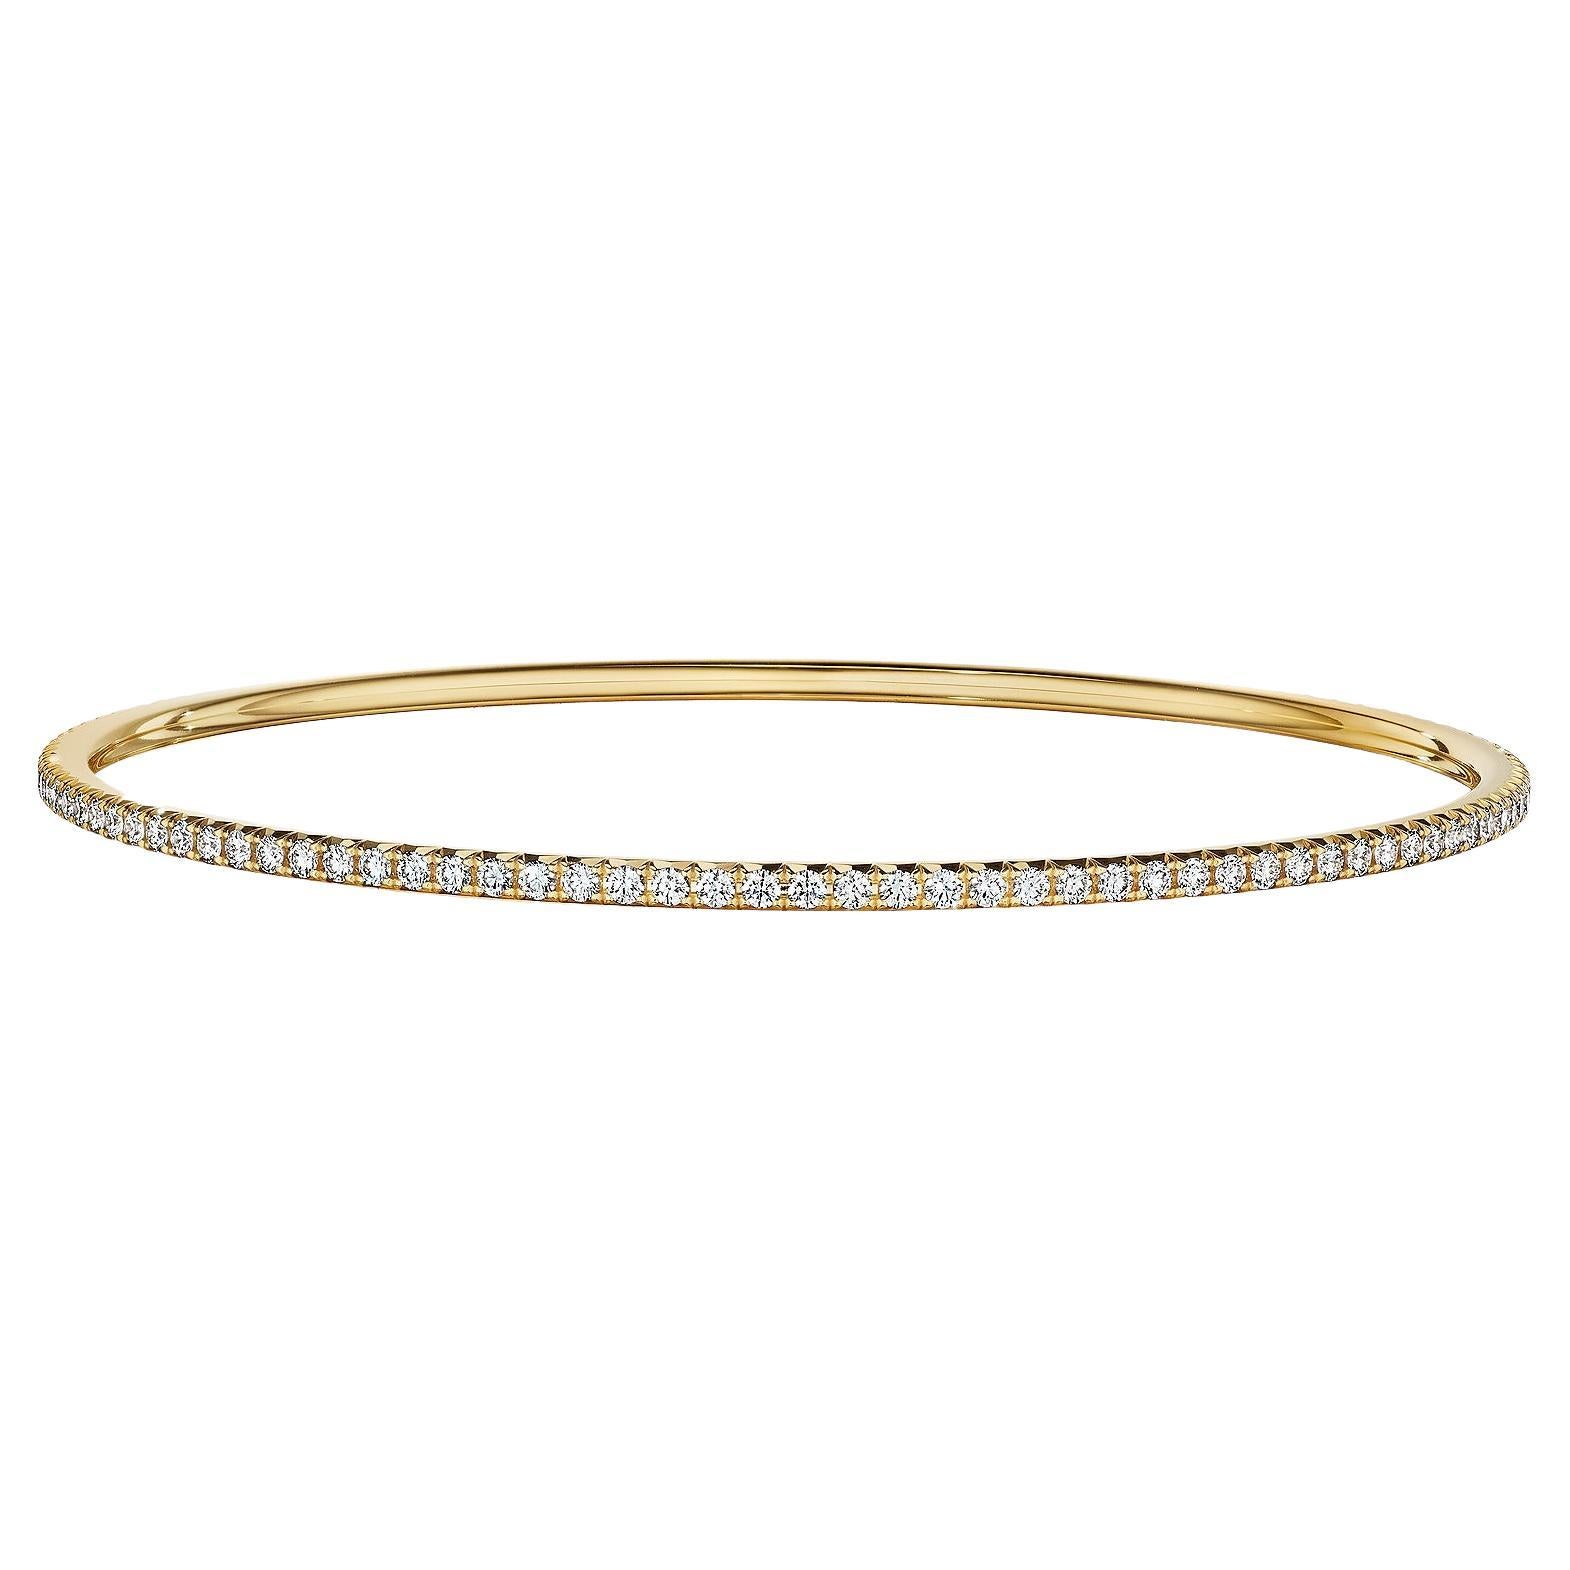 Tiffany & Co. Diamond Gold Modernist Bangle Bracelet